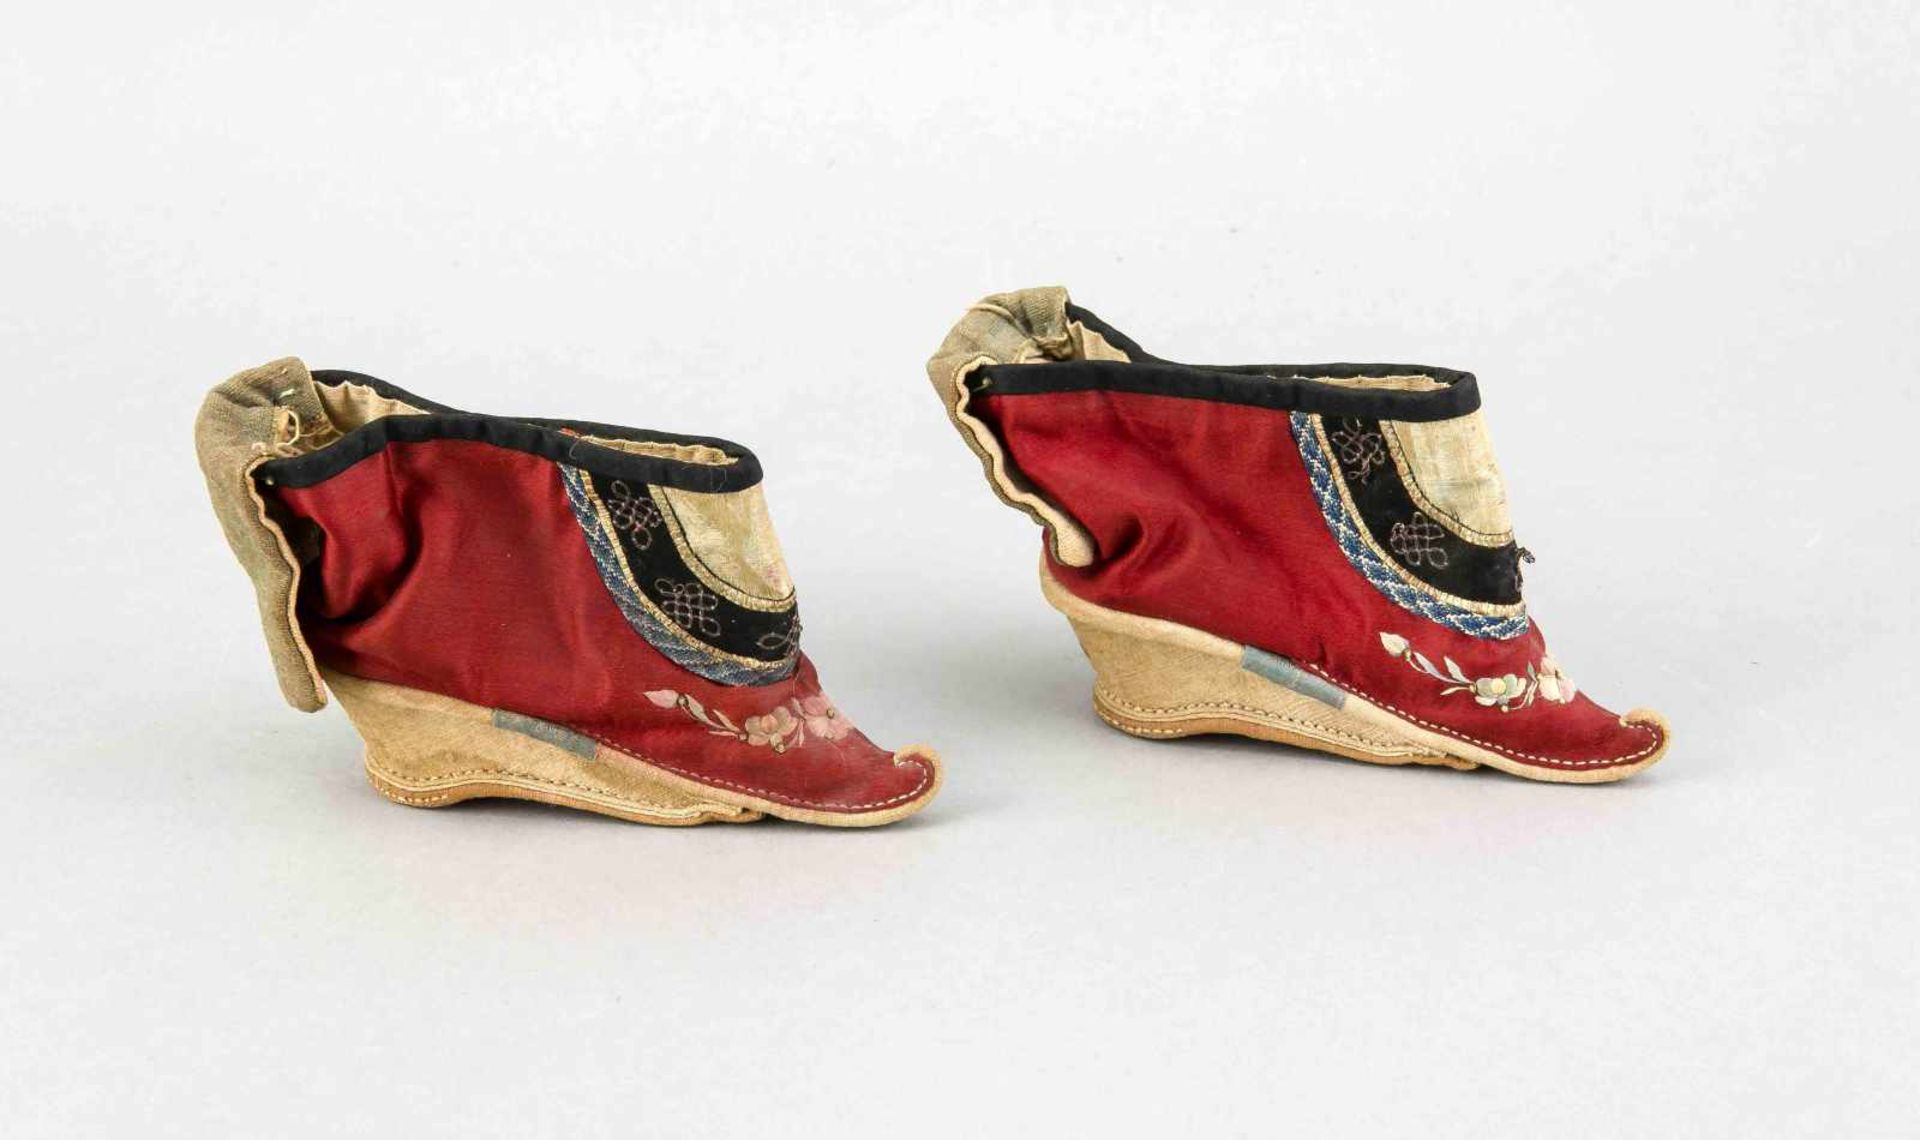 Paar Gin-Lien-Schuhe, China, 1. H. 20. Jh., Baumwolle u. Seide, Zierstickereien, innen einzelne